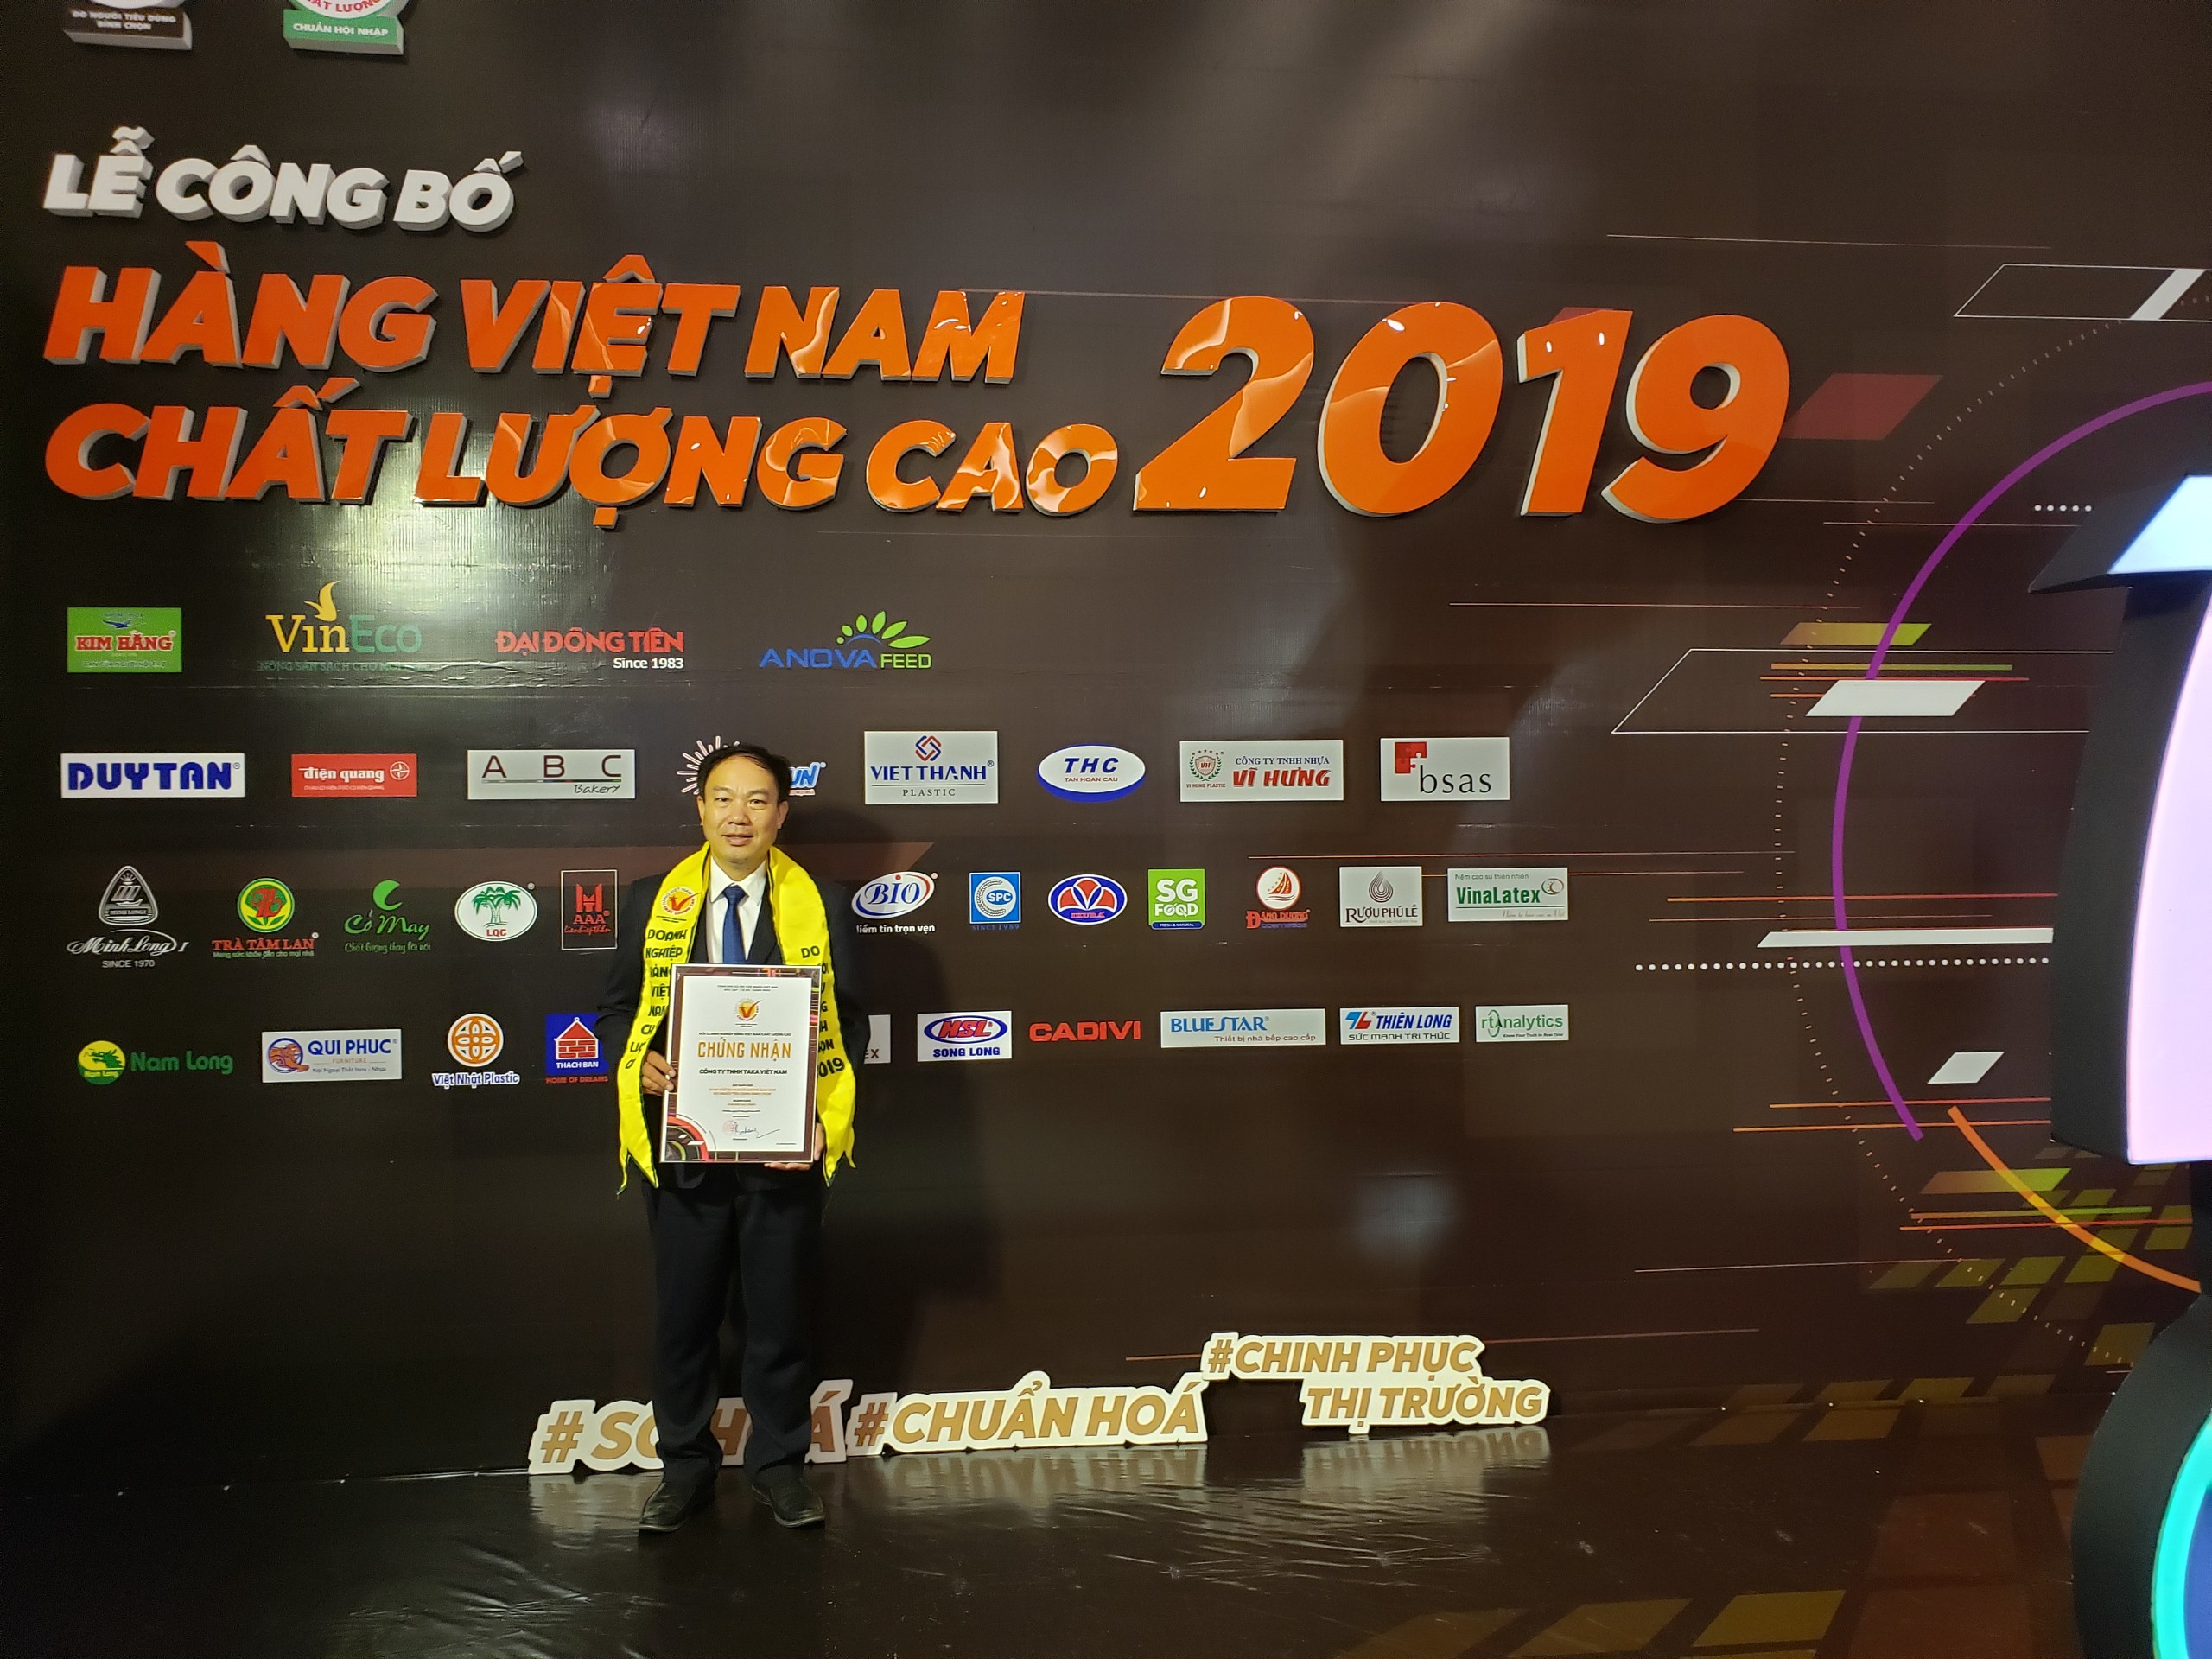 Taka vinh dự đạt danh hiệu Hàng Việt Nam chất lượng cao 2019